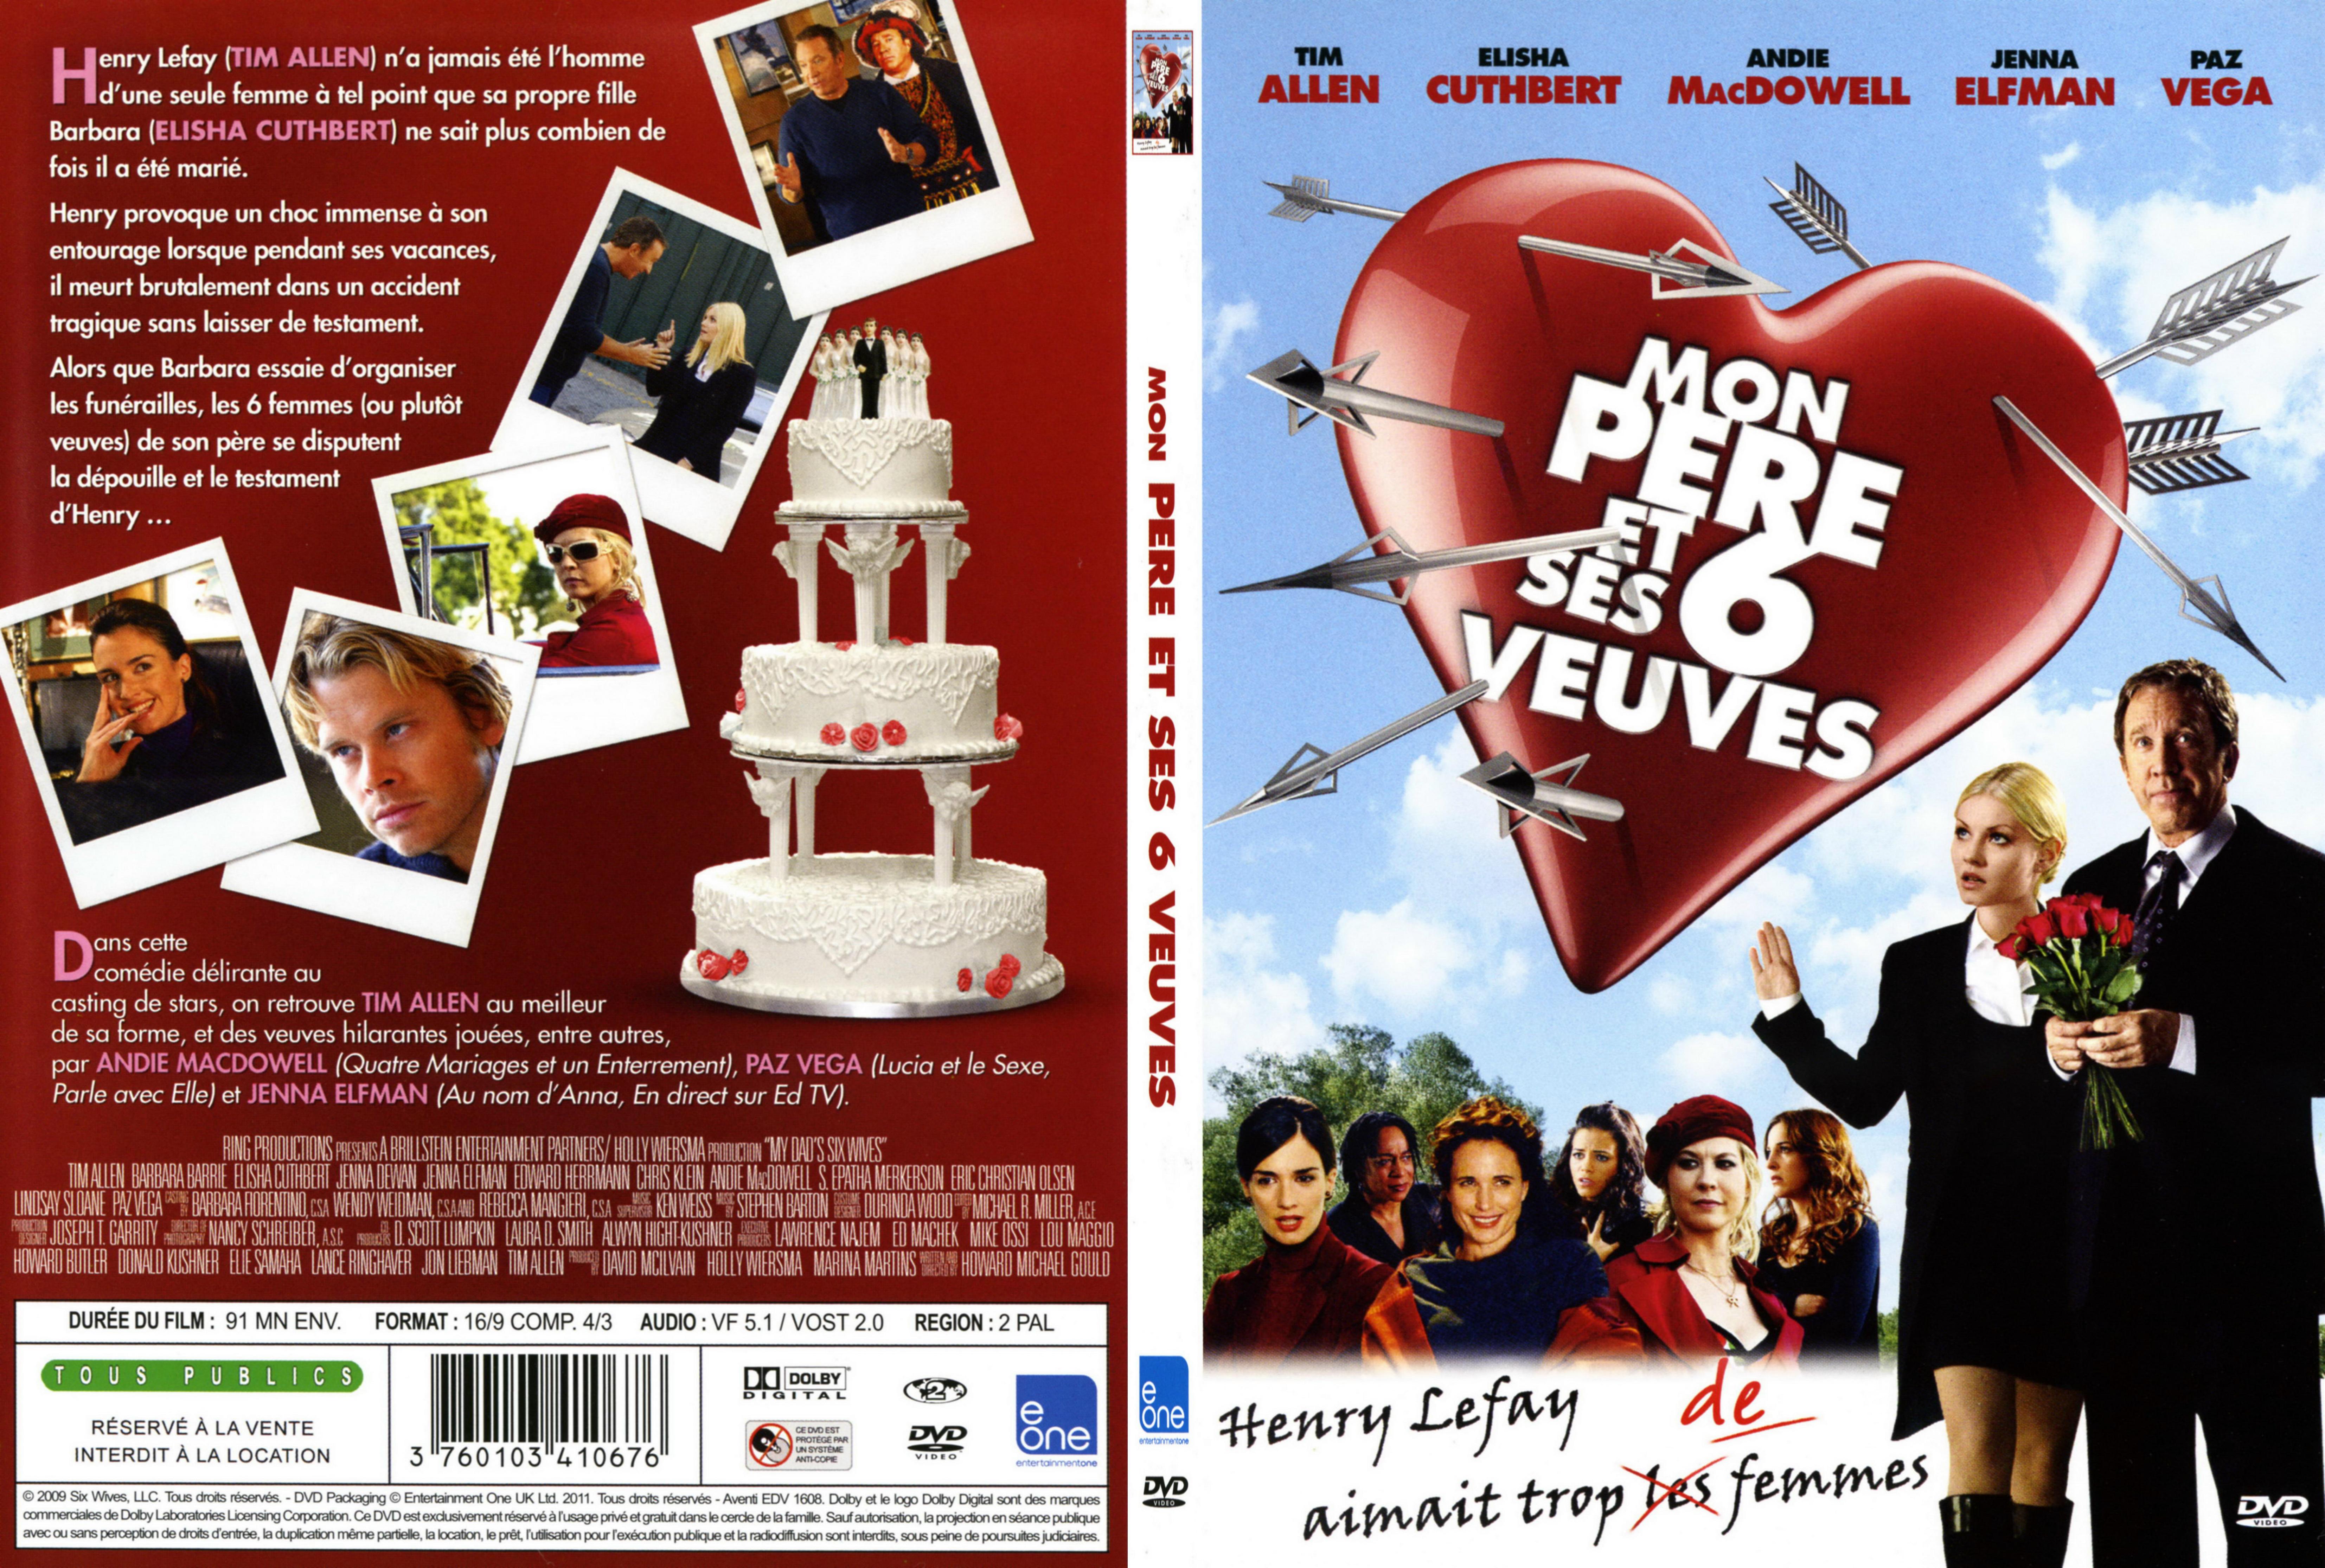 Jaquette DVD Mon pere et ses 6 veuves - SLIM